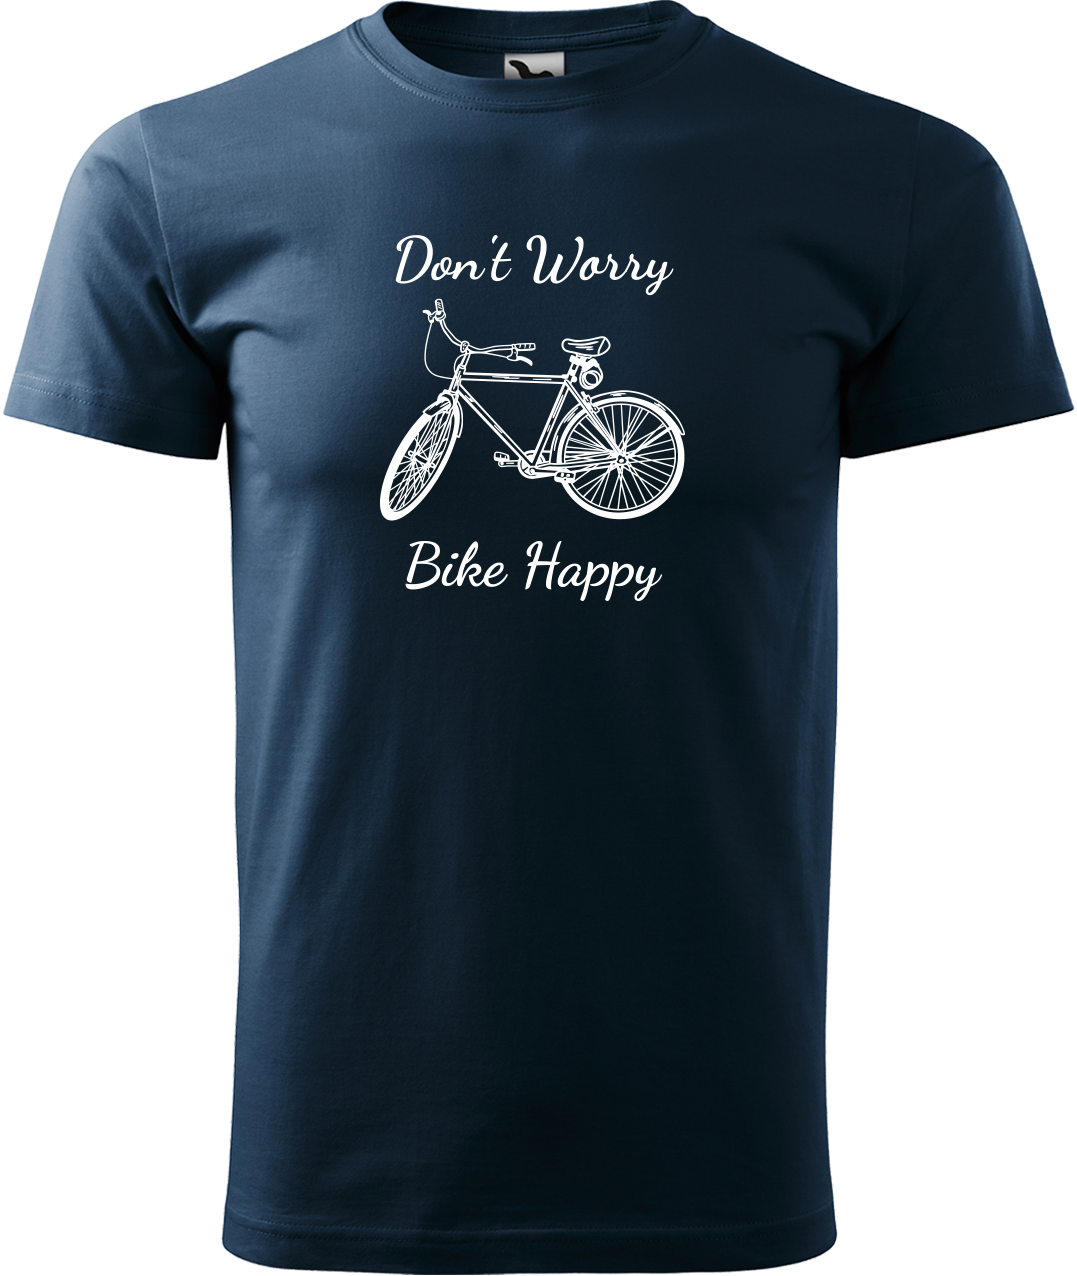 Pánské tričko s kolem - Don't Worry Bike Happy Velikost: L, Barva: Námořní modrá (02)